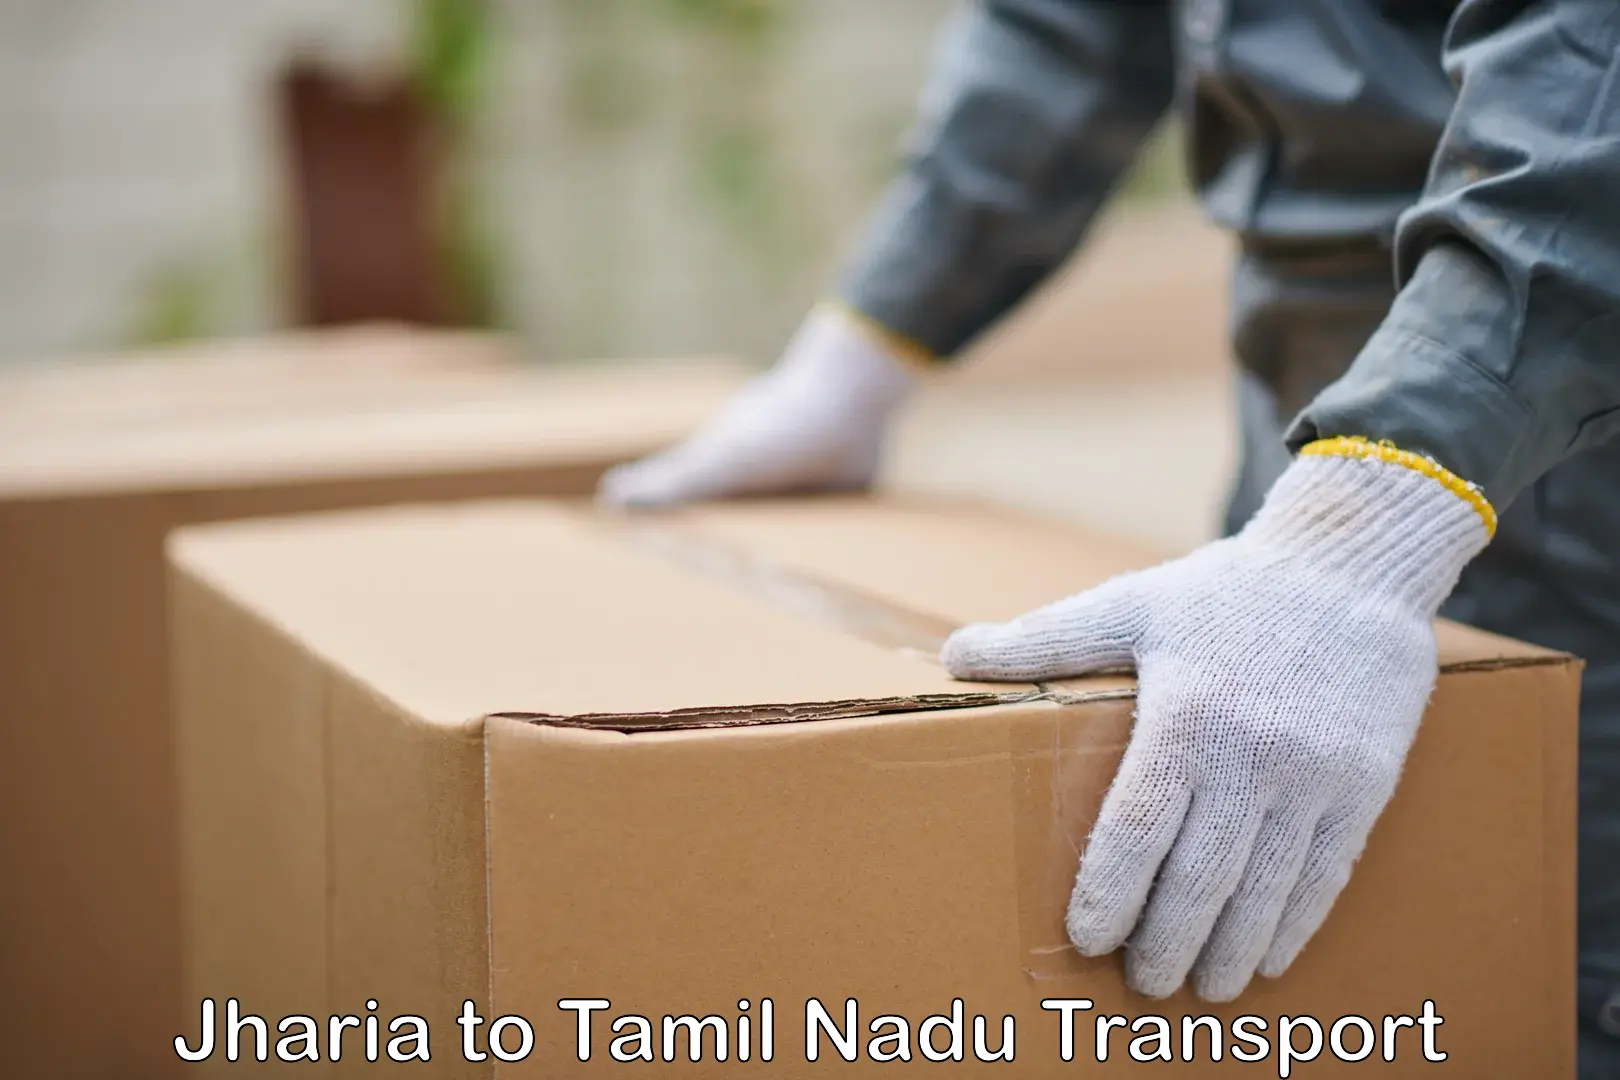 Pick up transport service Jharia to Tamil Nadu